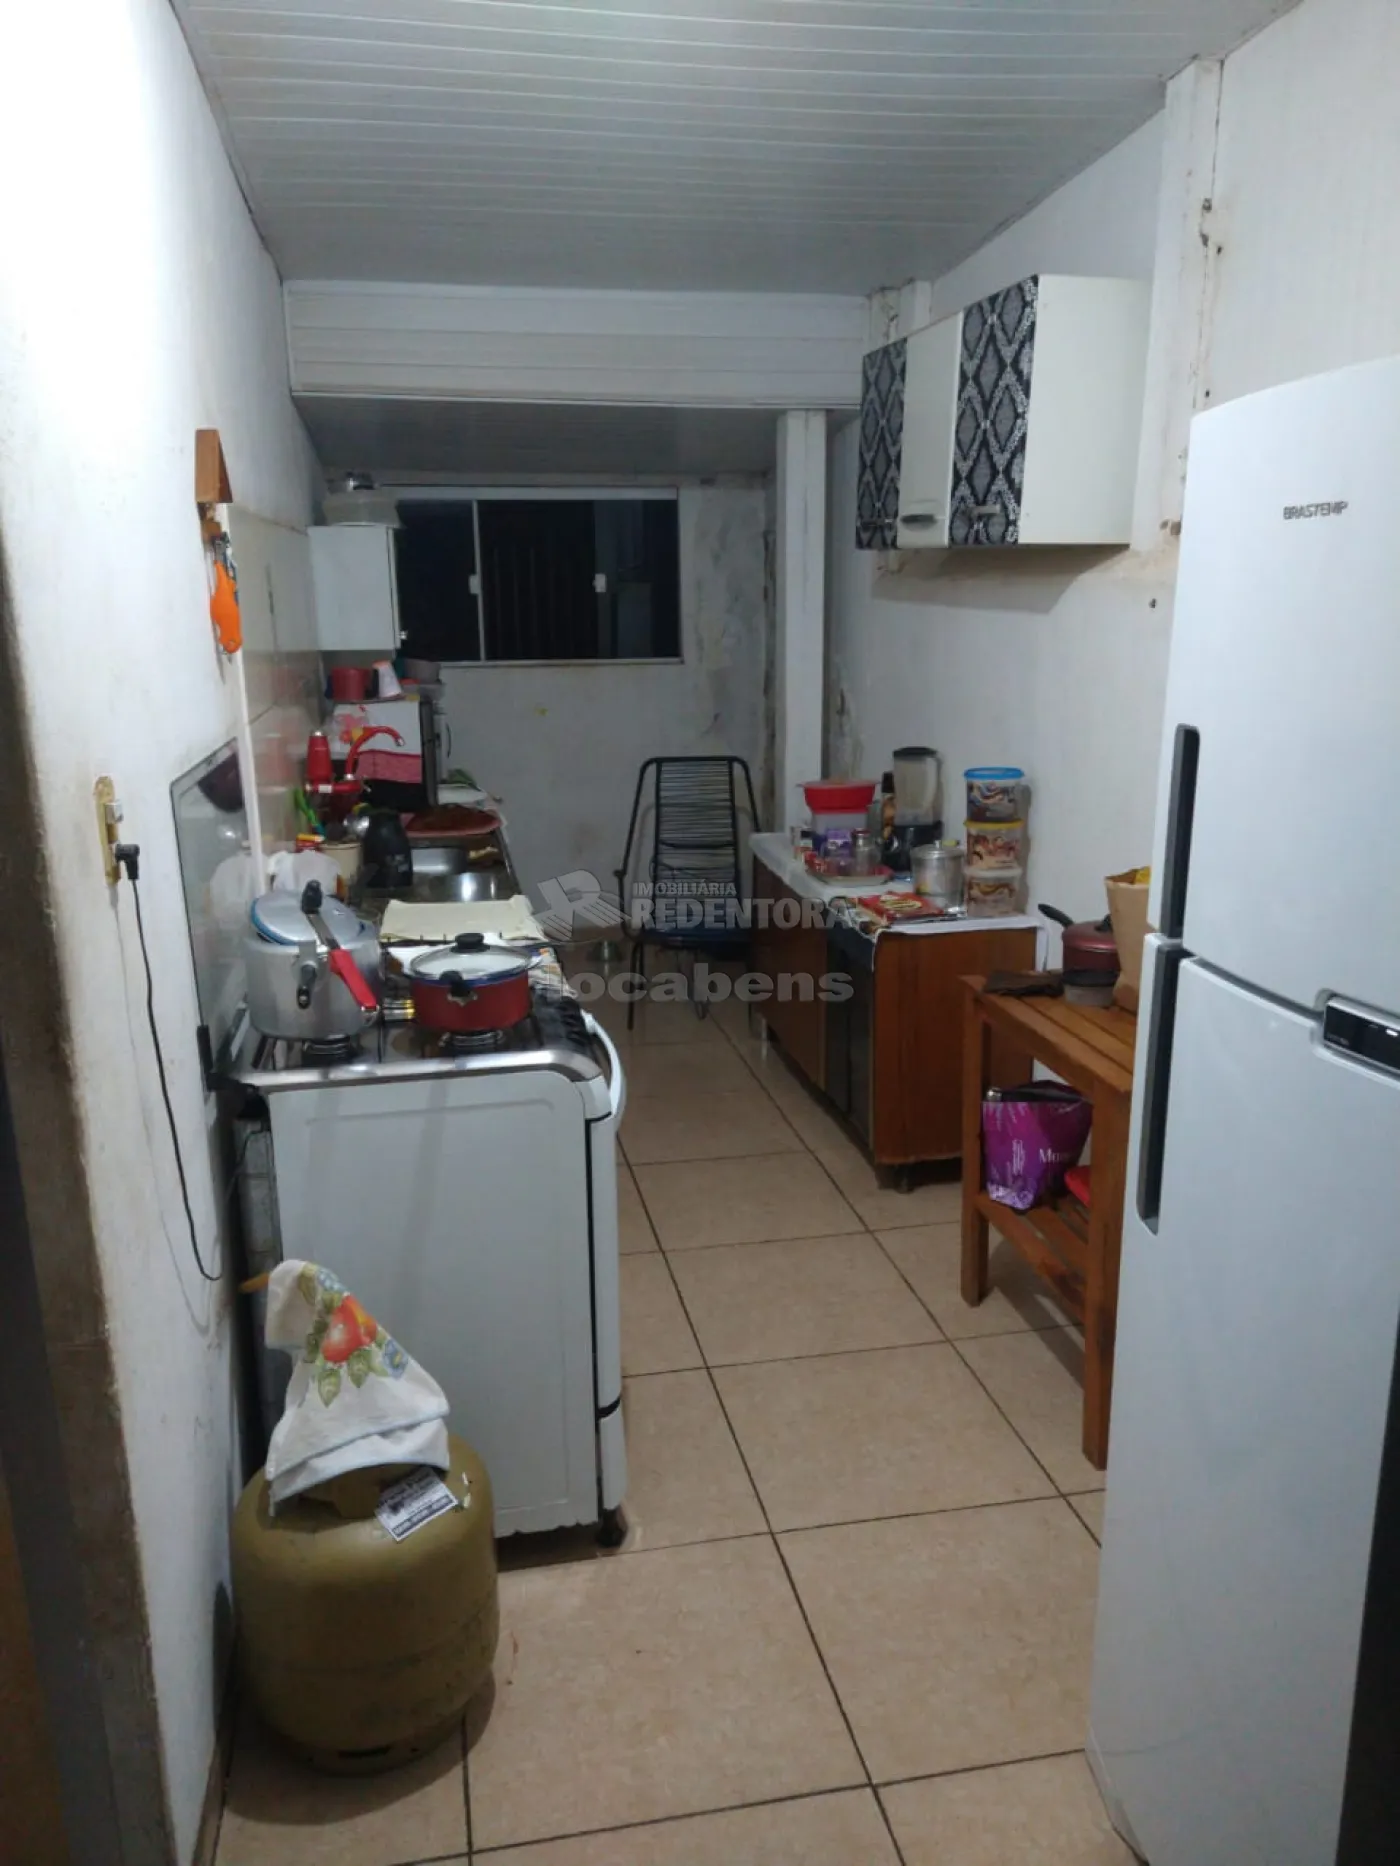 Comprar Casa / Padrão em São José do Rio Preto R$ 290.000,00 - Foto 4